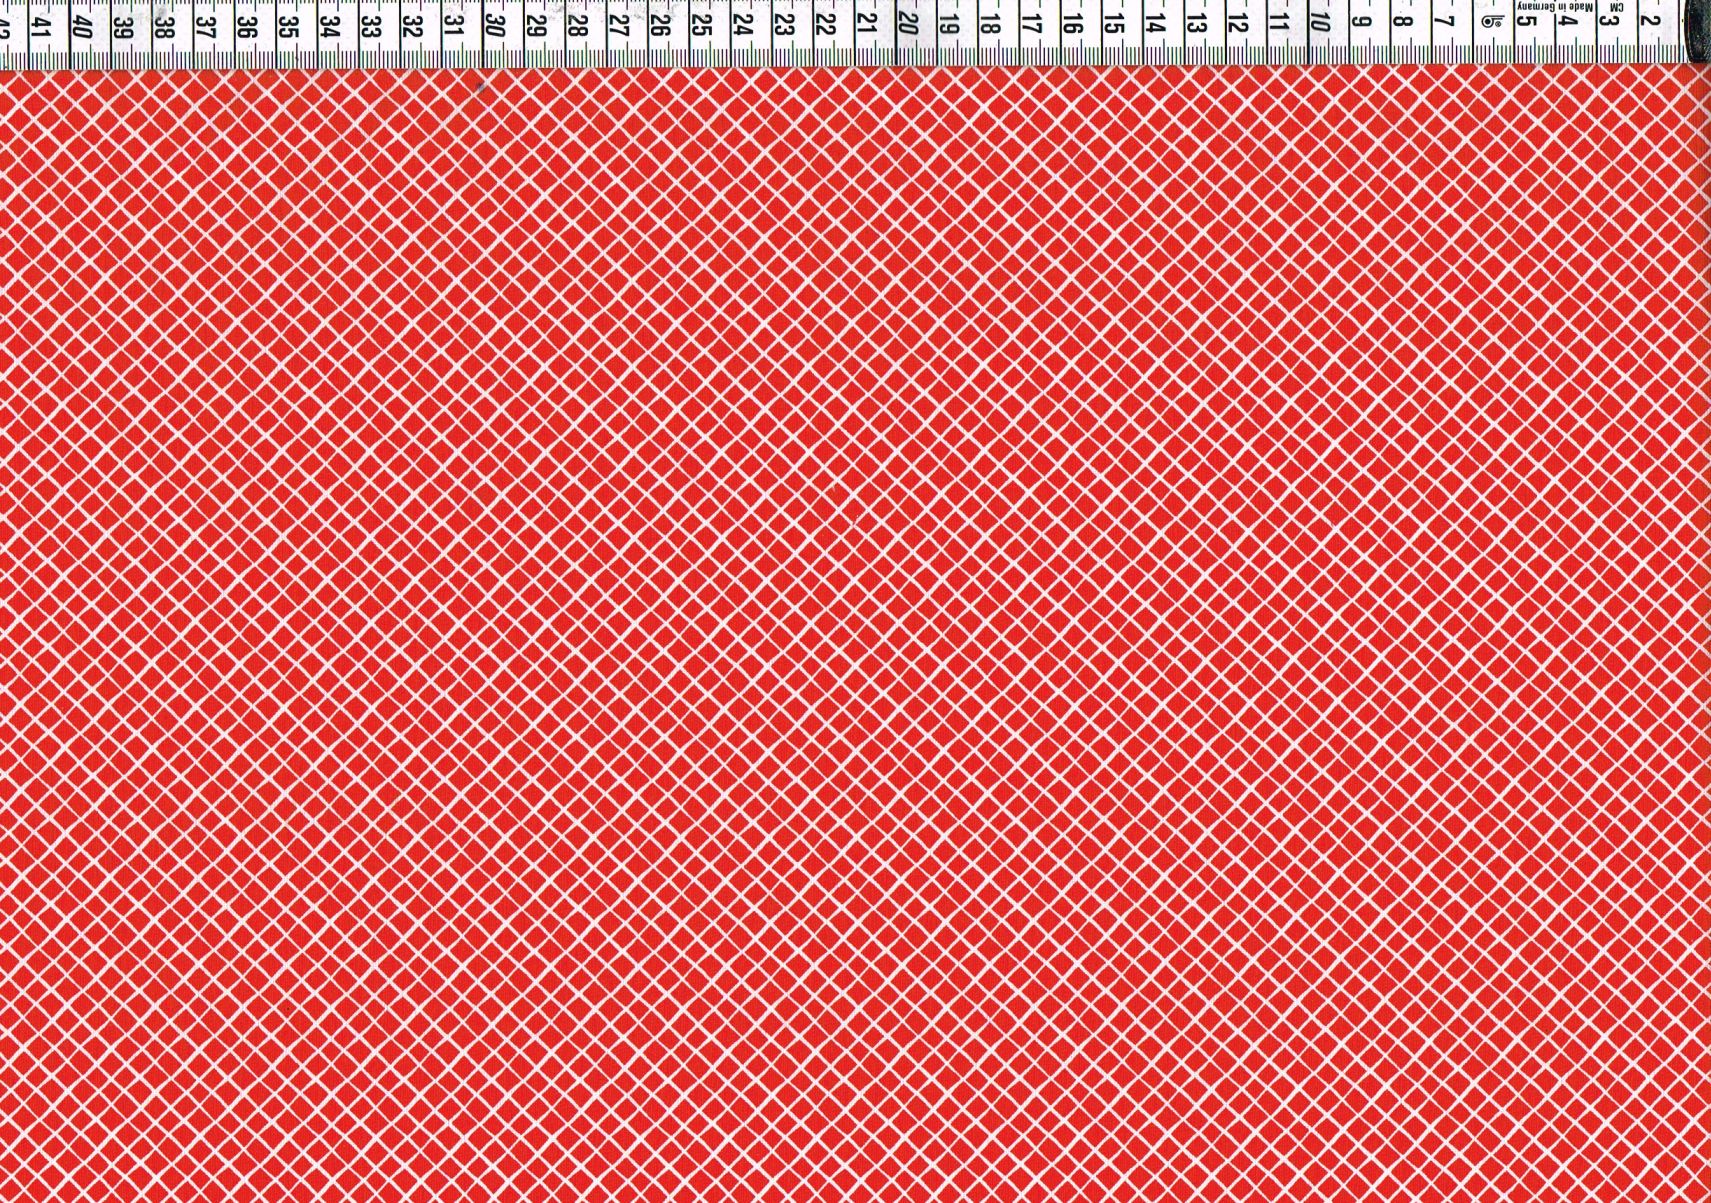 Baumwollgewebe - kleine Rauten rot/weiß